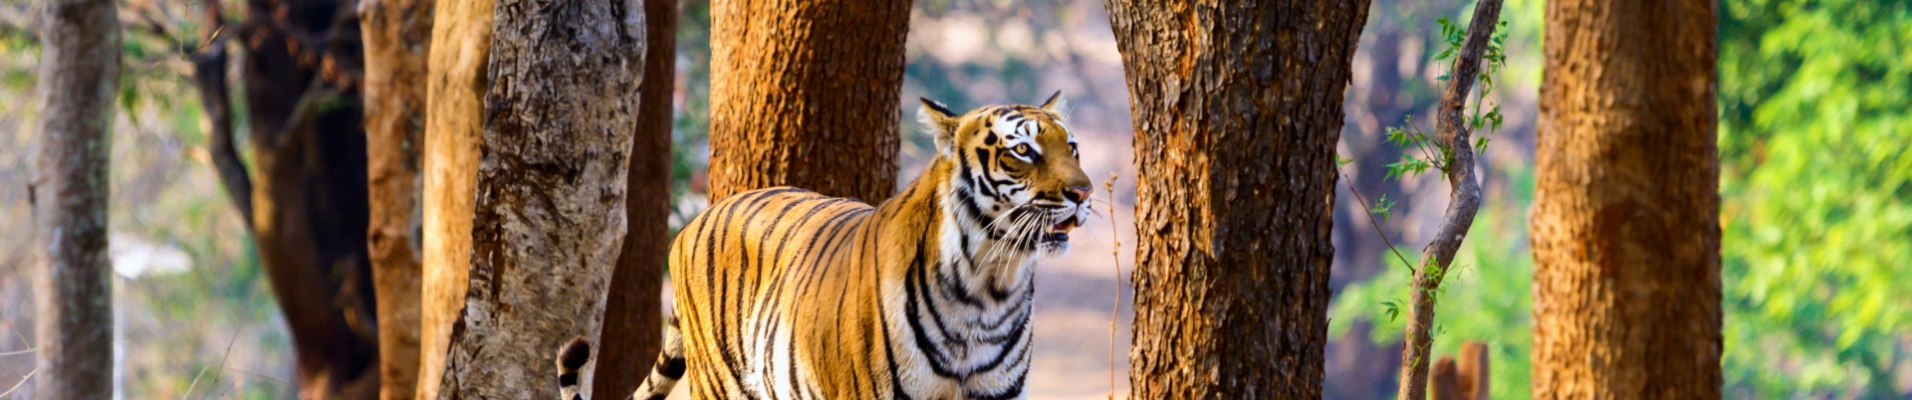 Tigre-jawai-park